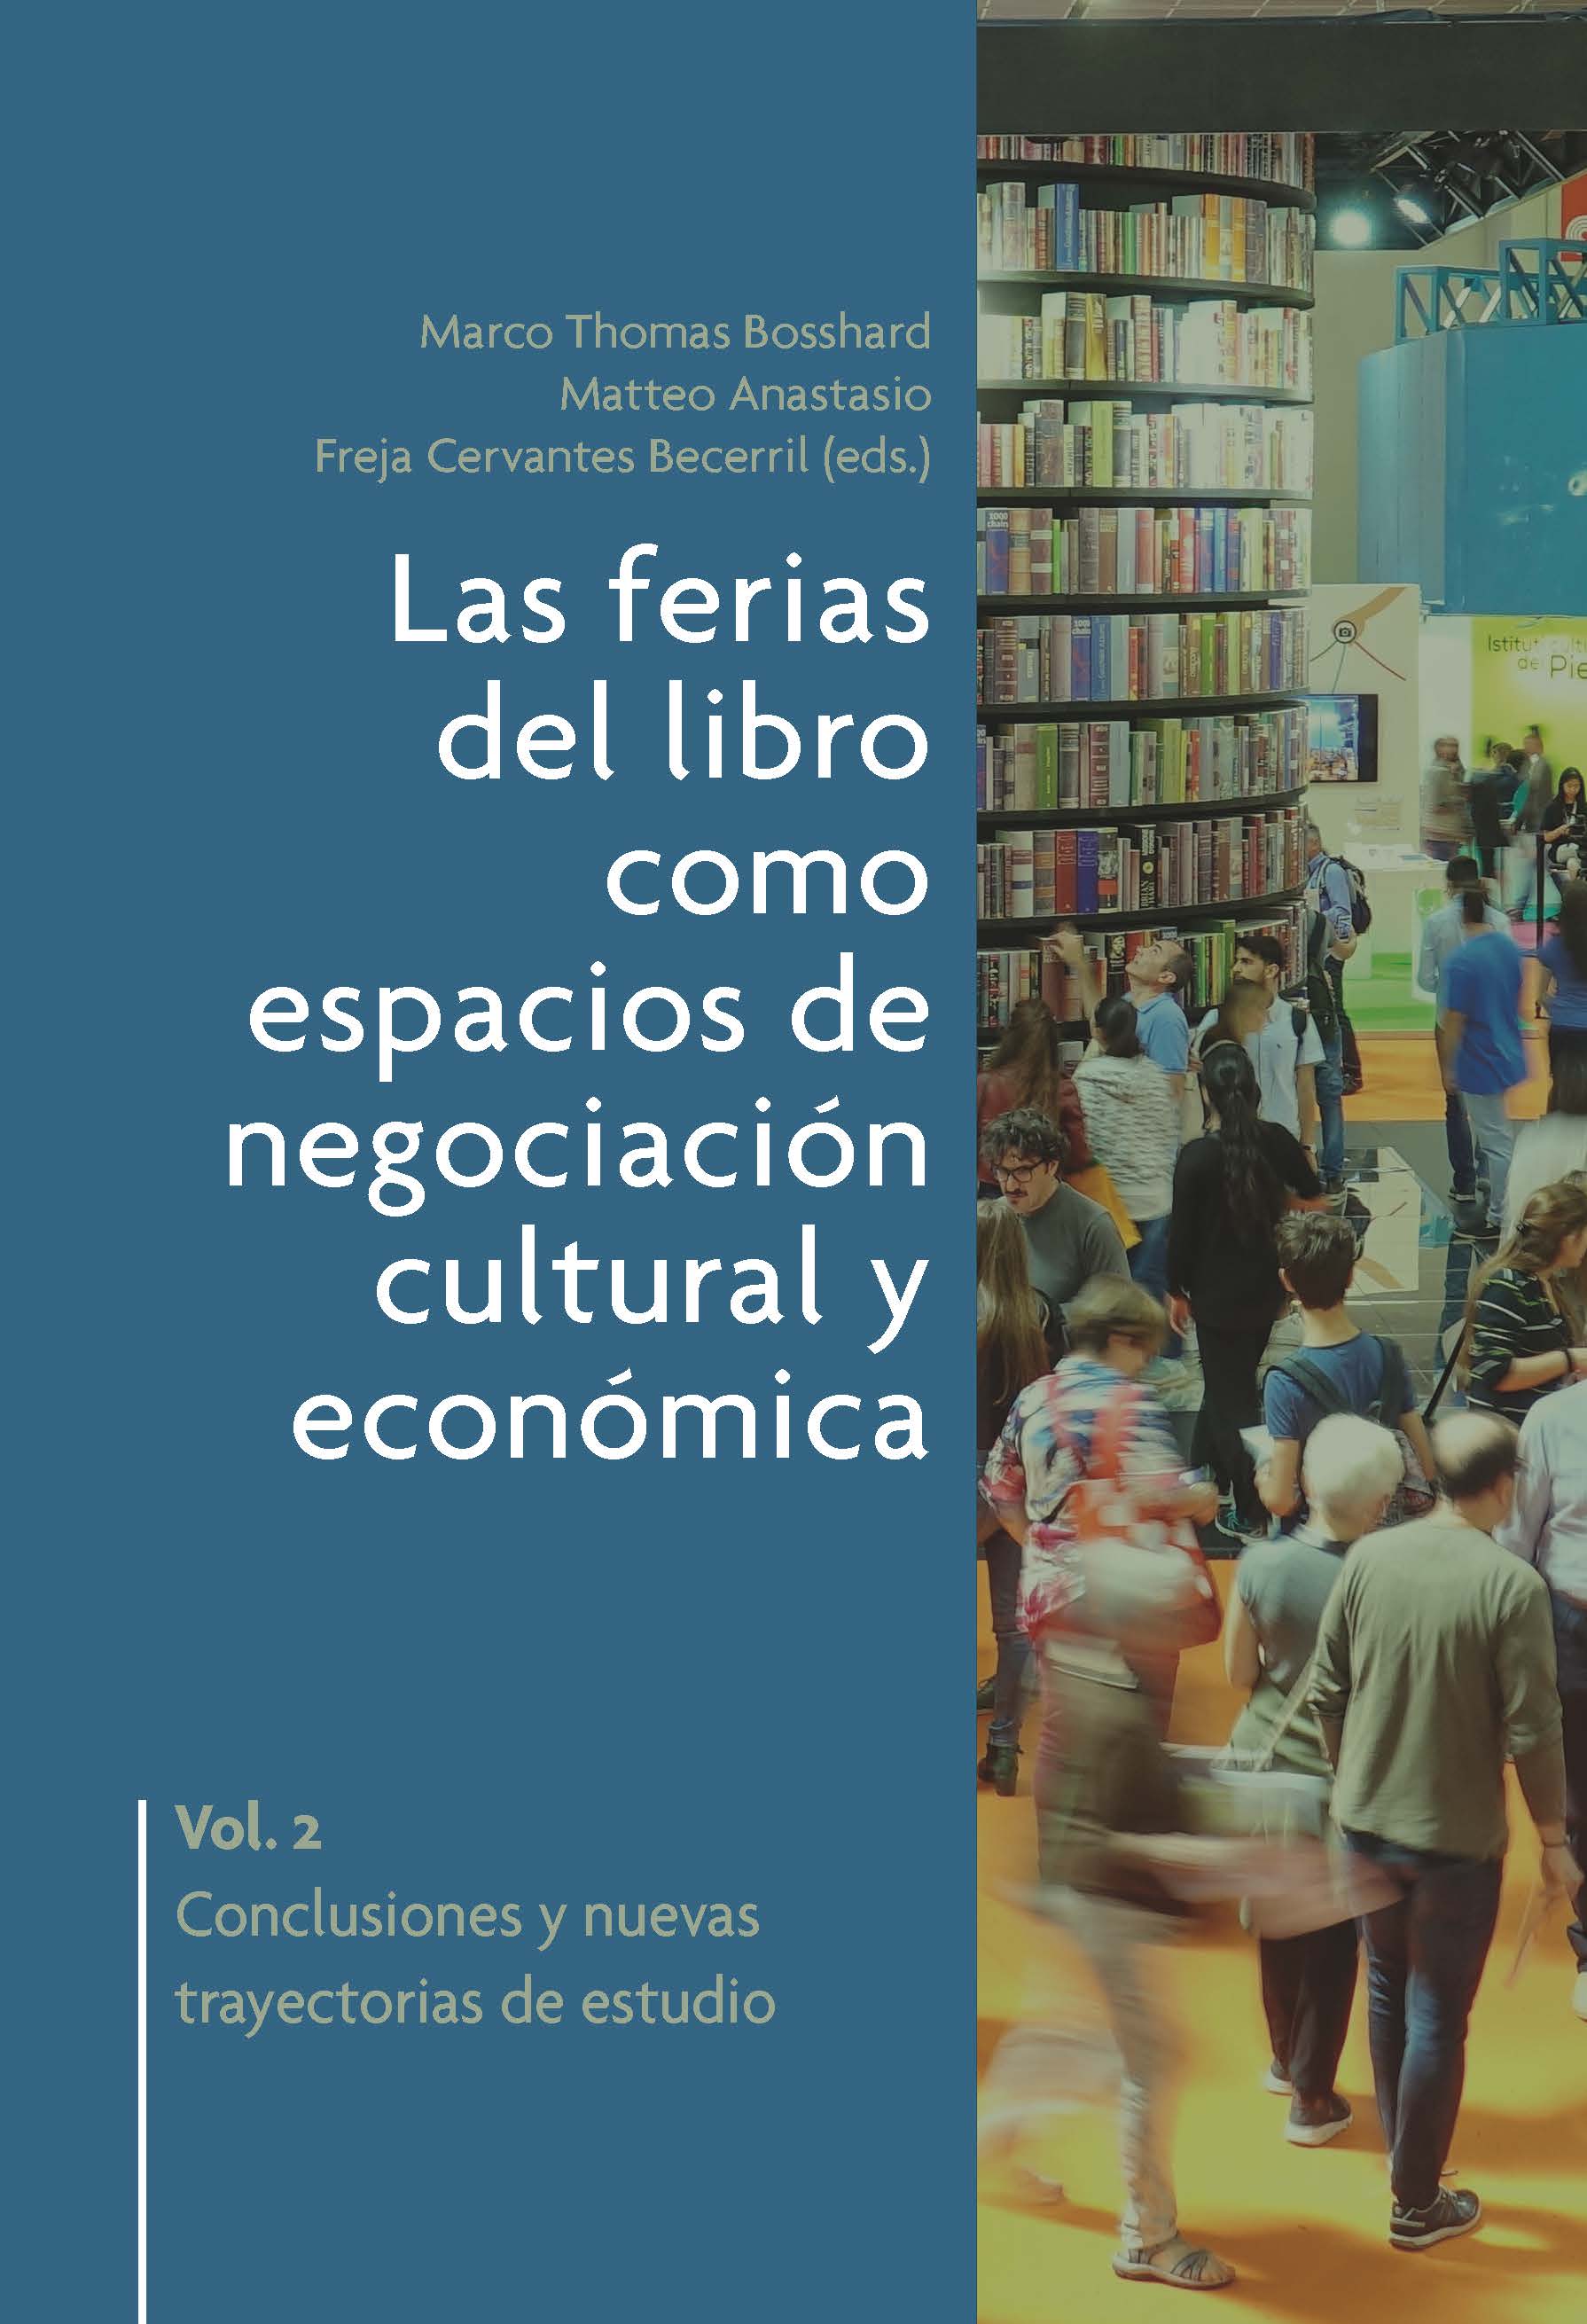 Las ferias del libro como espacios de negociación cultural y económica 